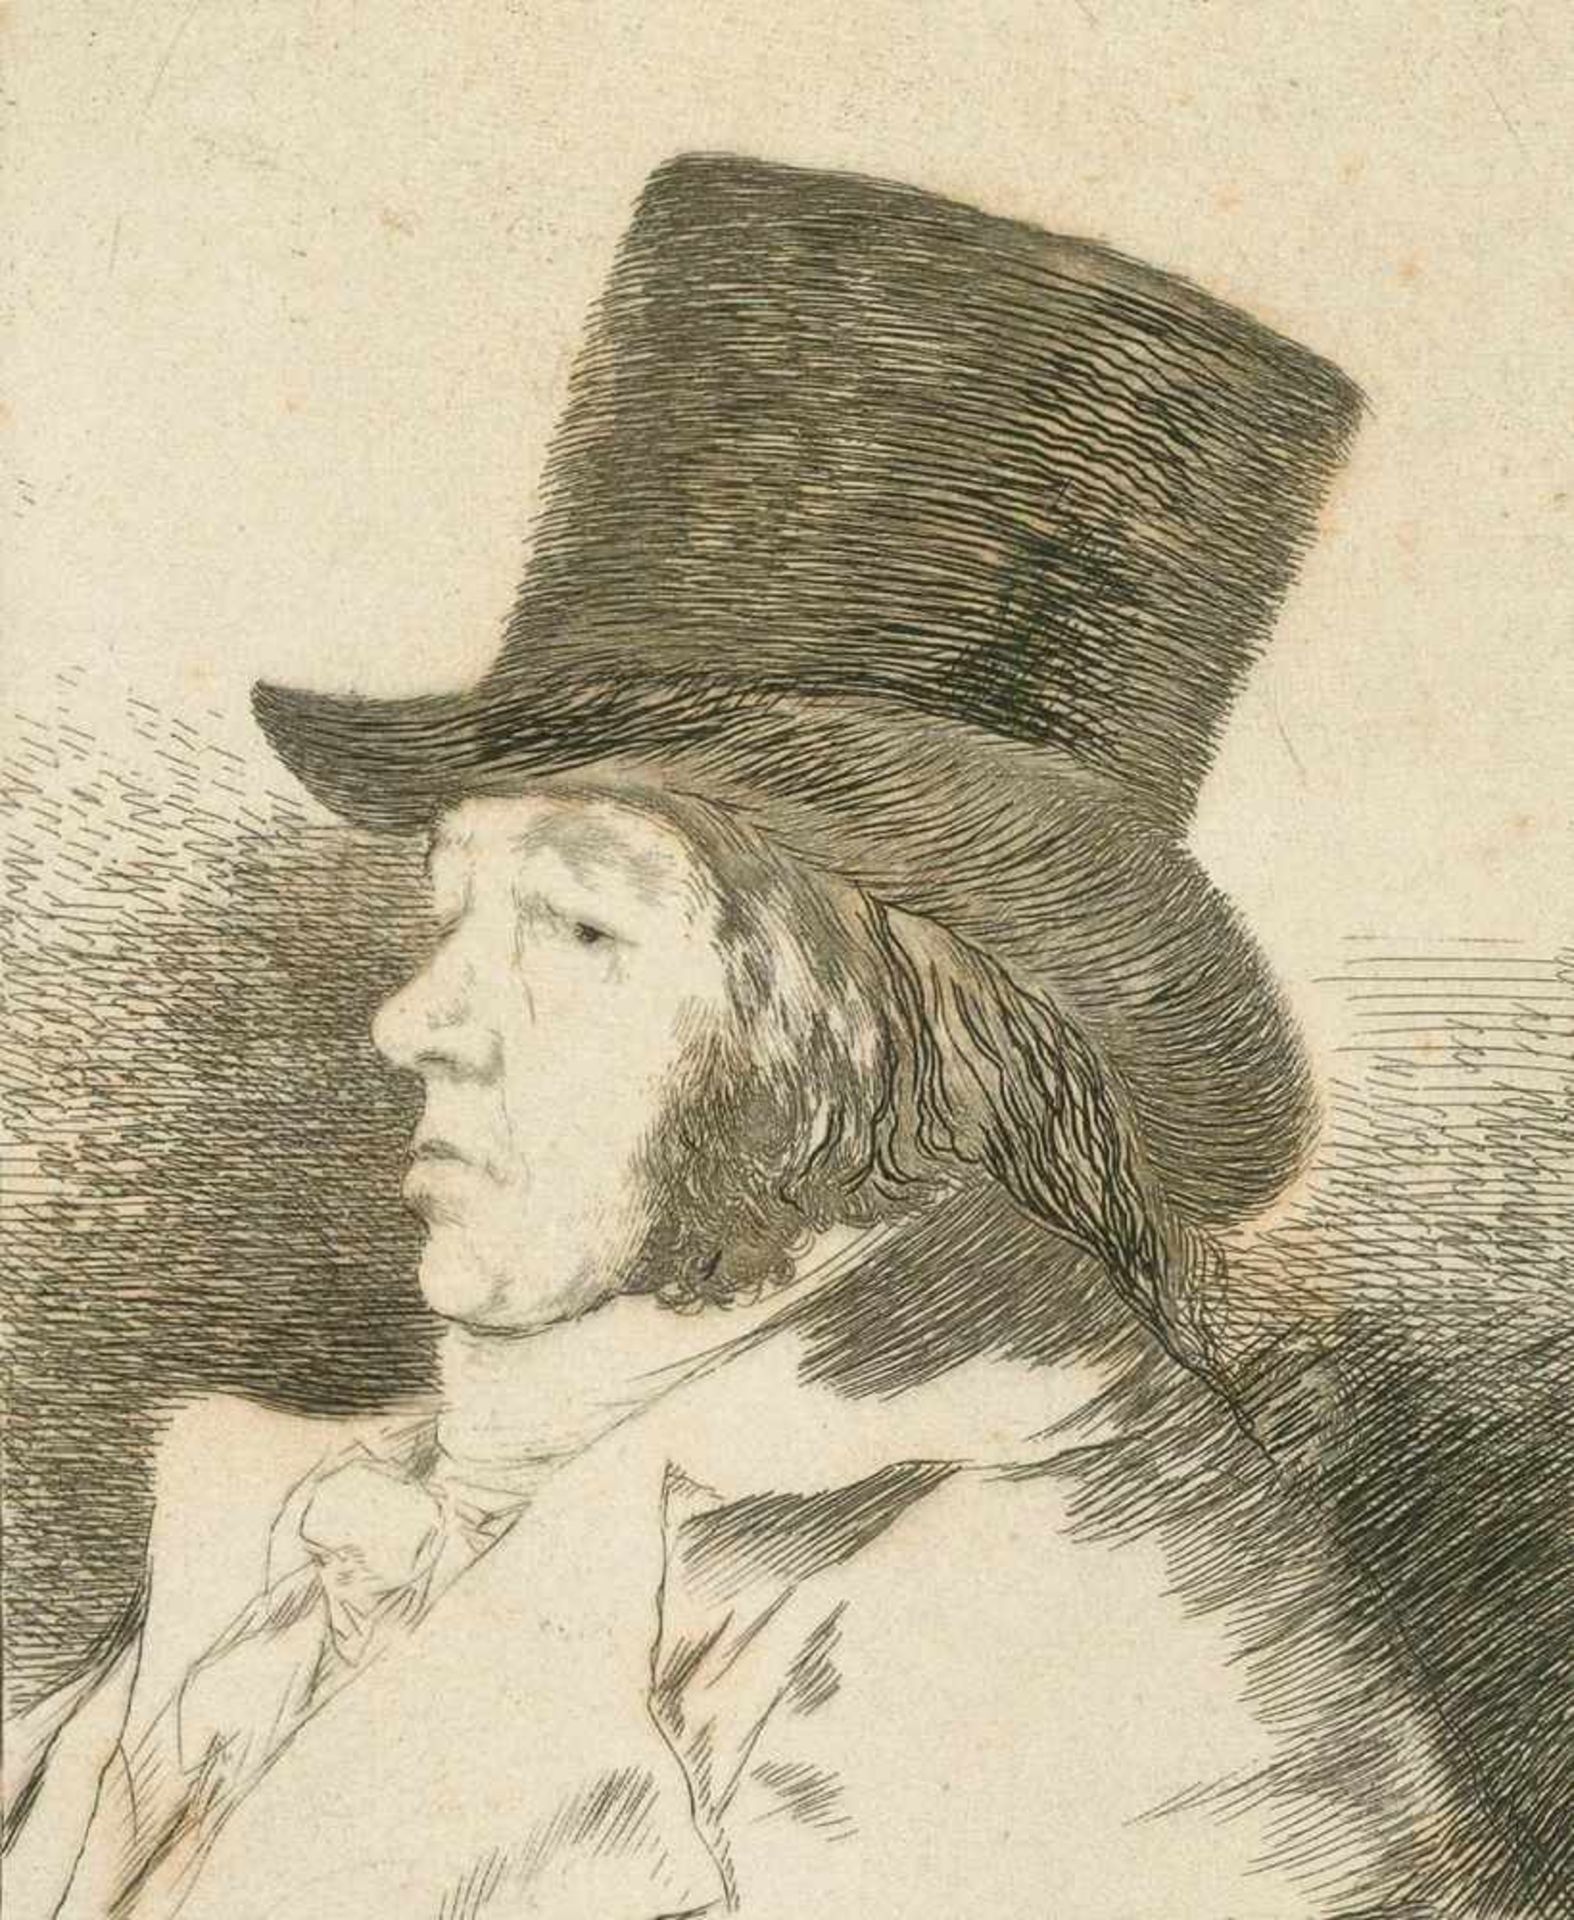 Goya, Francisco de(1746 Fuendetodos - Bordeaux 1828). Los Caprichos. 80 Radierungen mit Aquatinta in